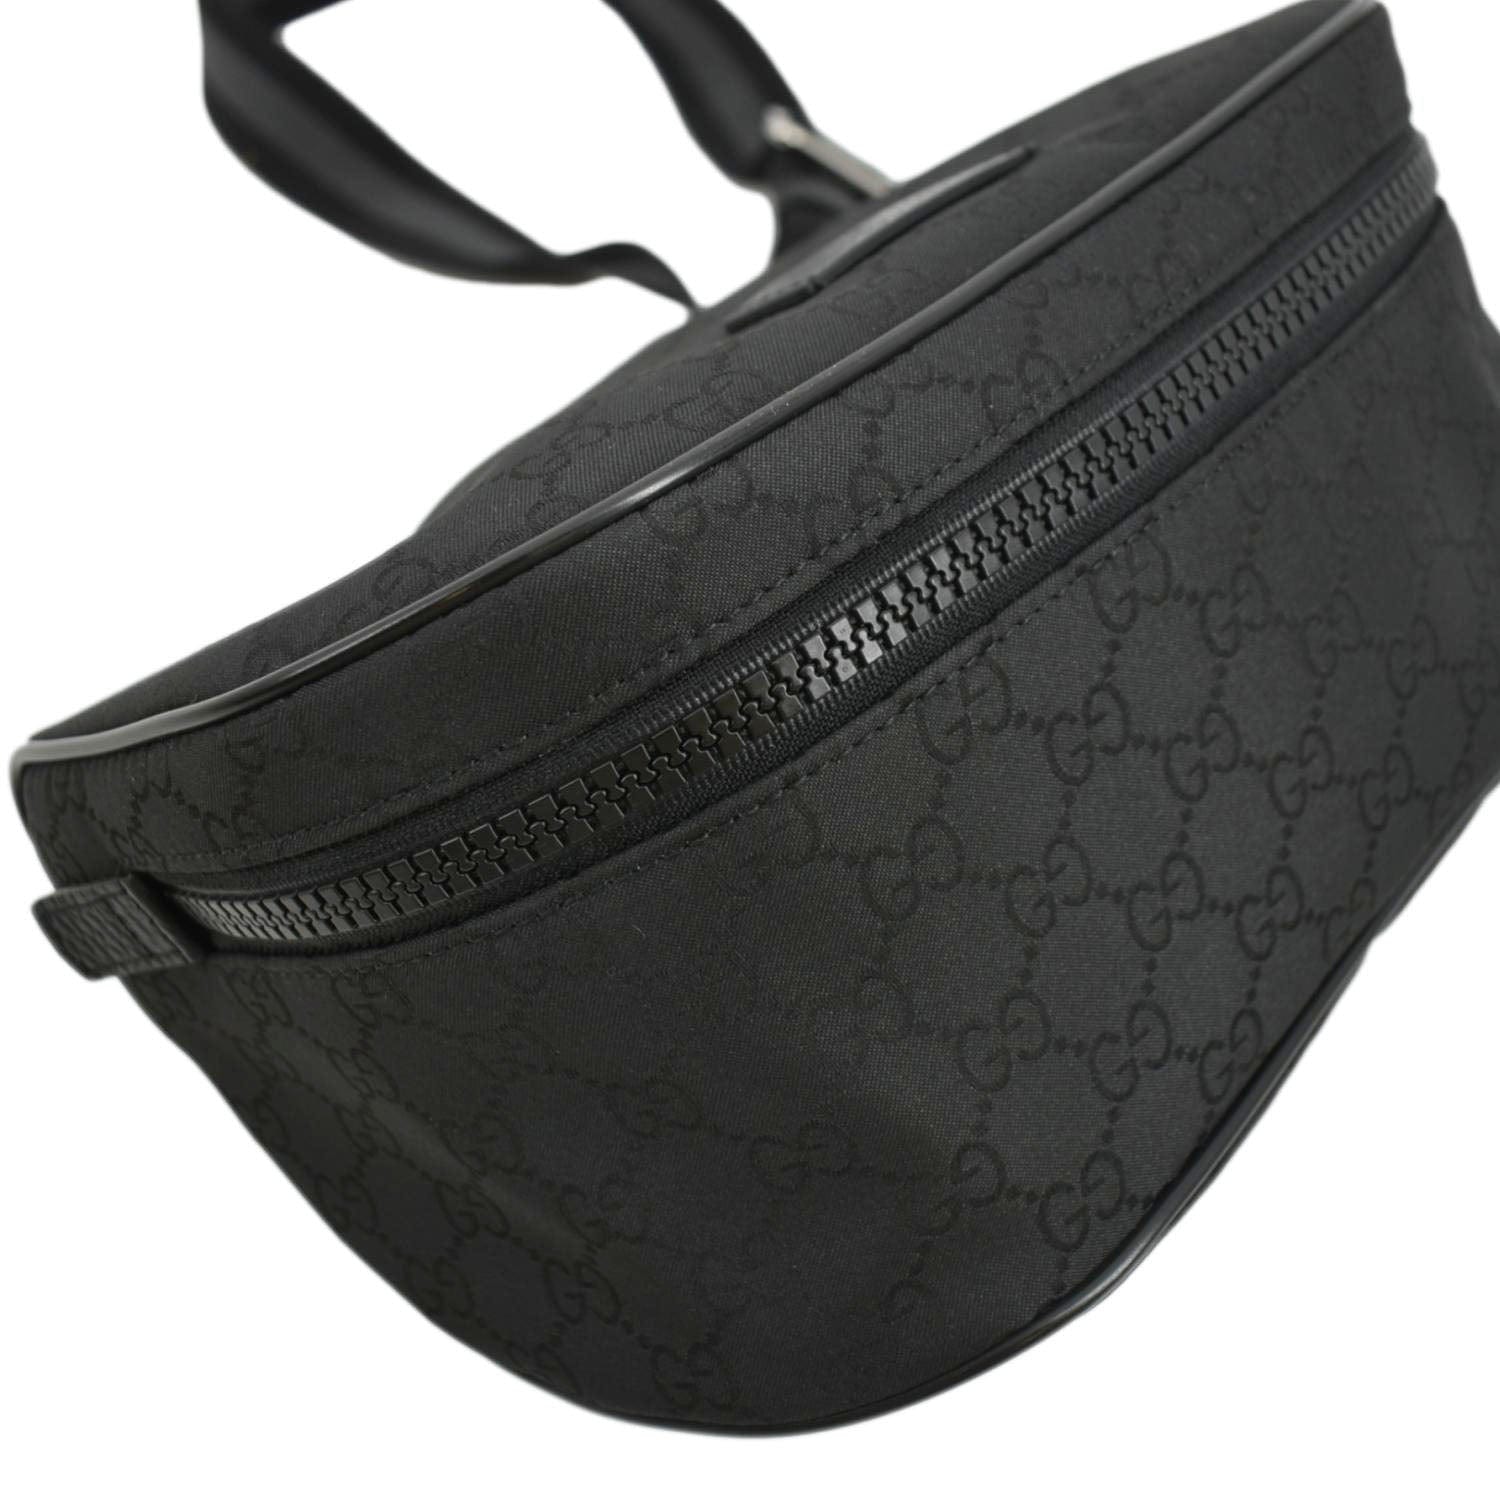 Gucci Nylon Belt Bag